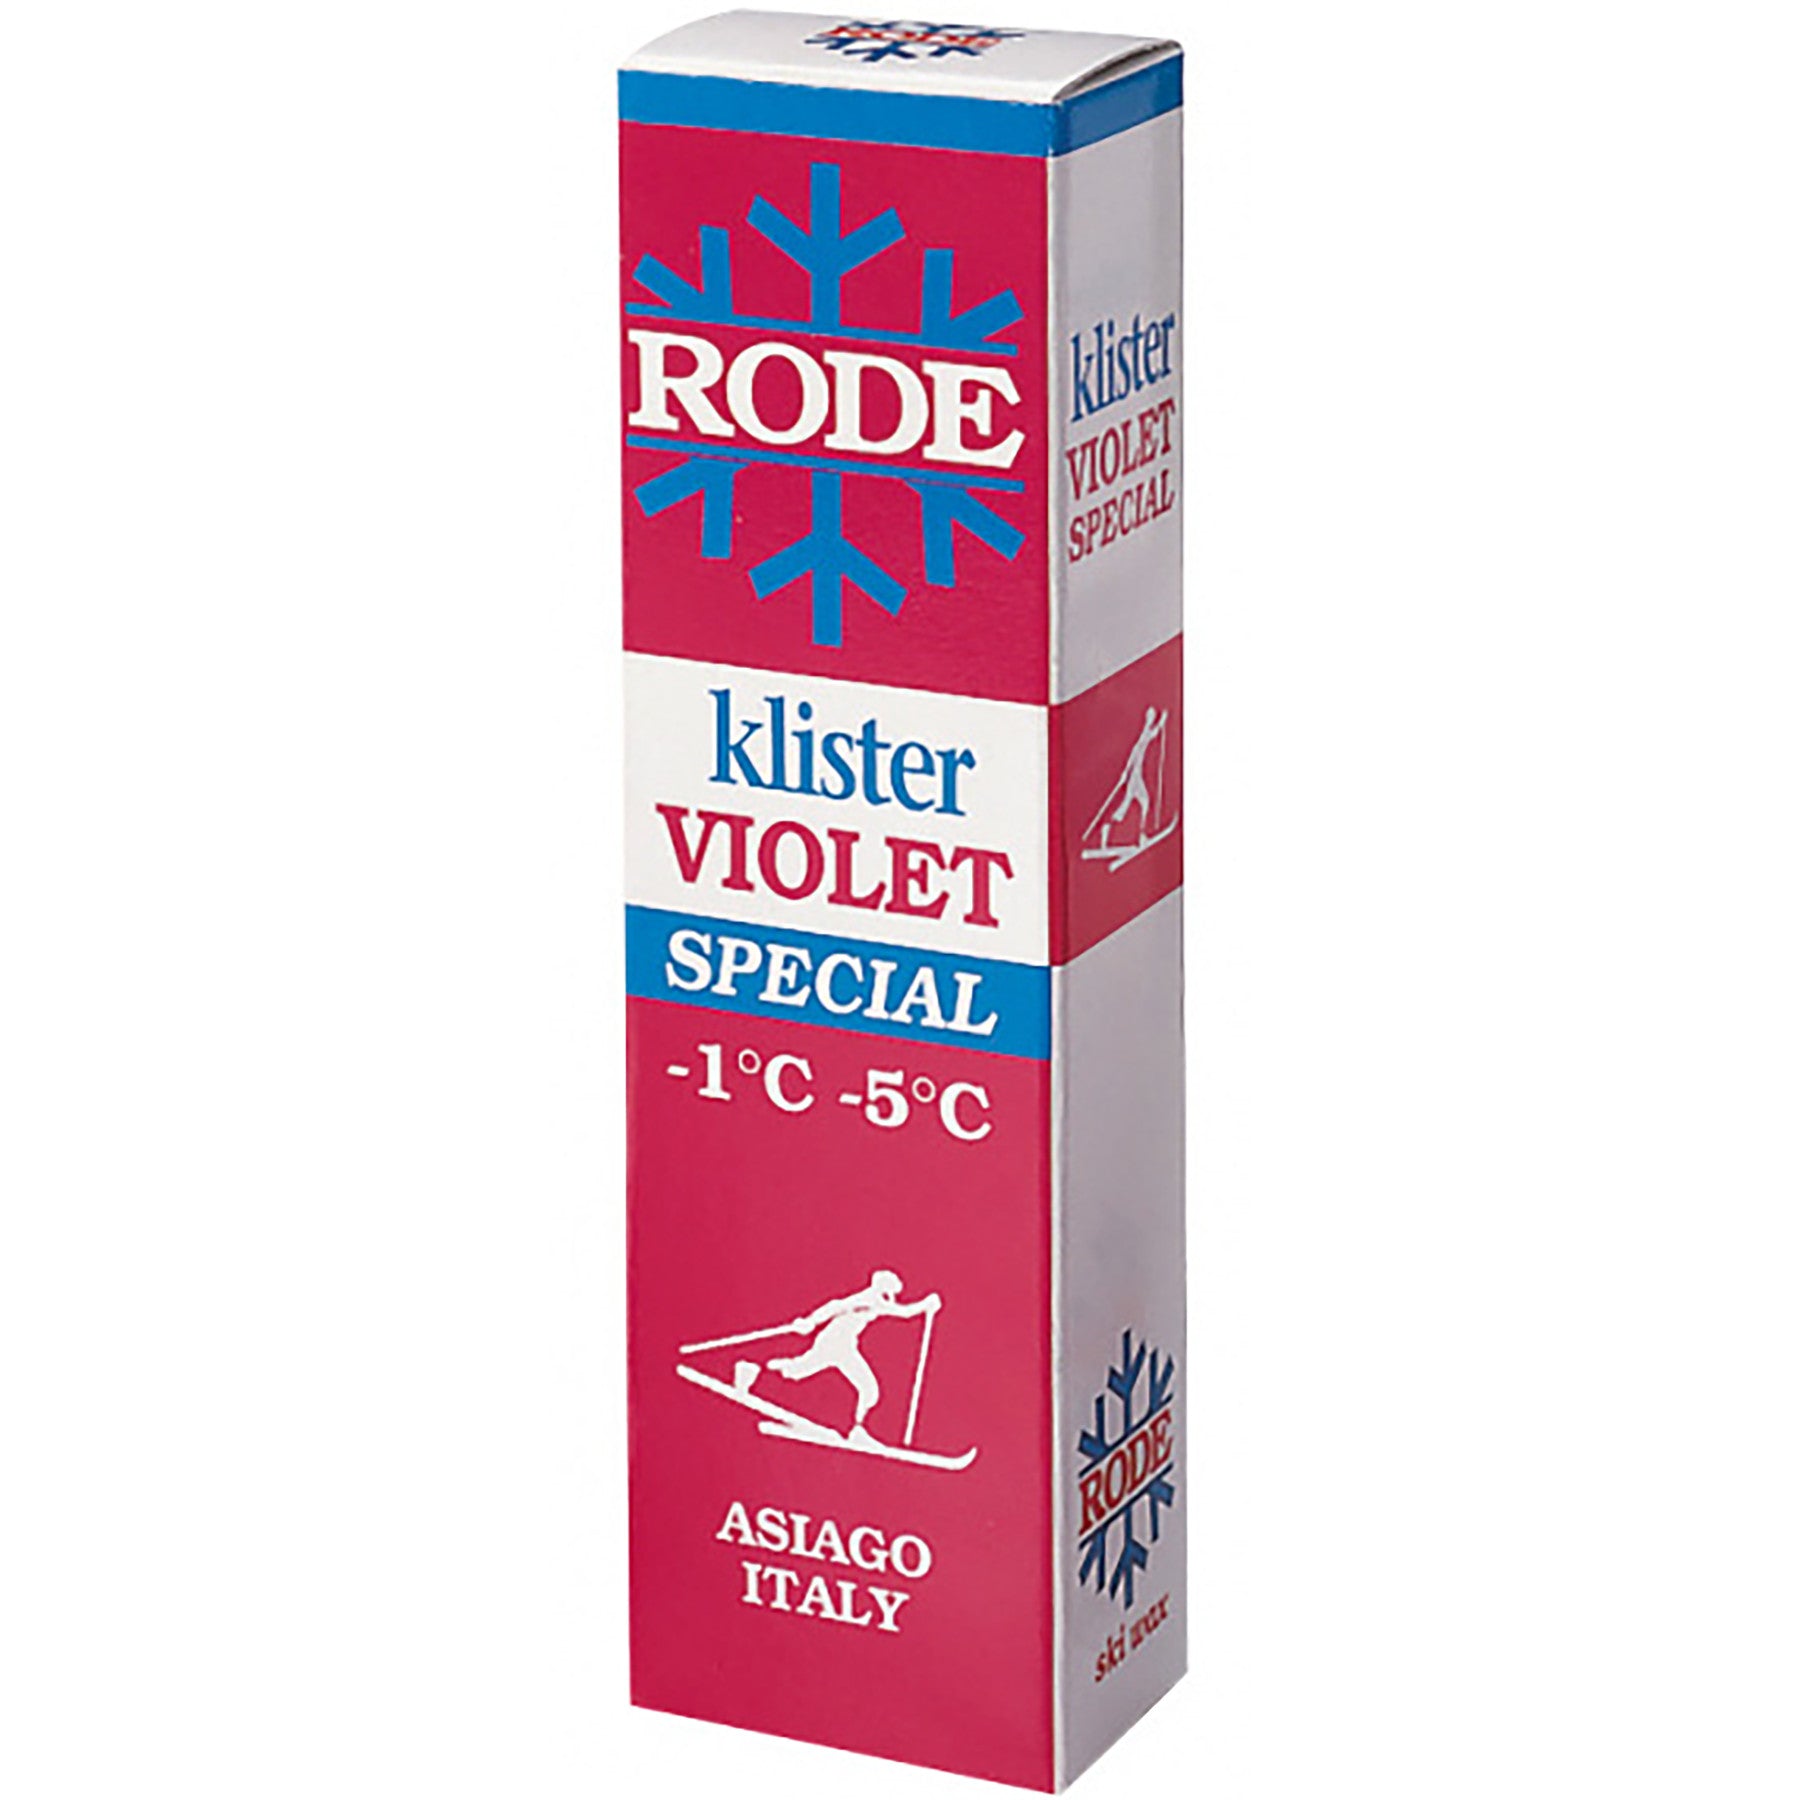 Buy violet-special-k36 Rode Klister 60g tube